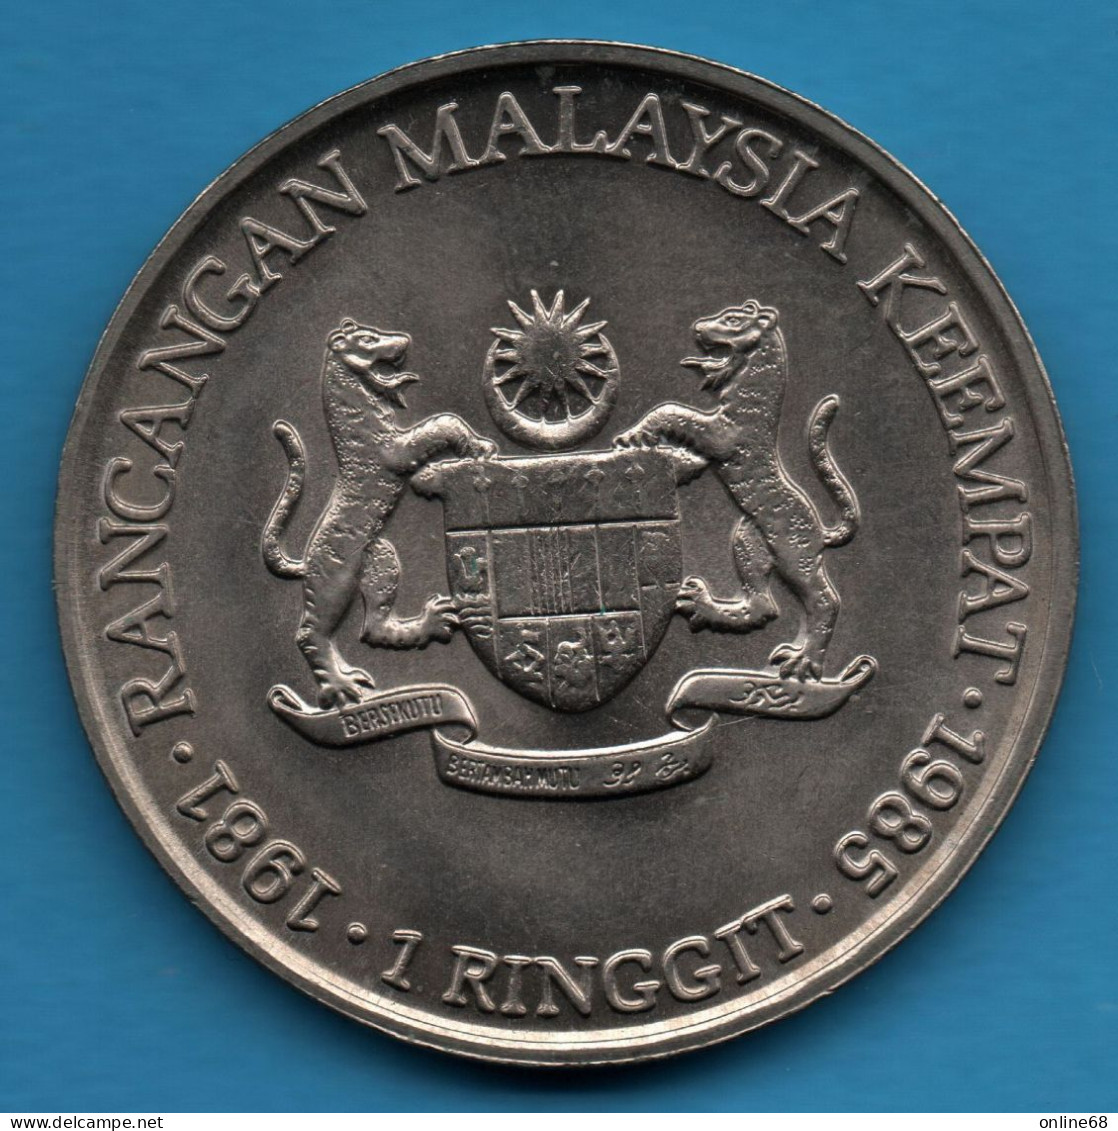 MALAYSIA 1 RINGGIT 1981 - 1985 KM# 29 4th Malaysia Plan TUN HUSSEIN ONN - Malesia